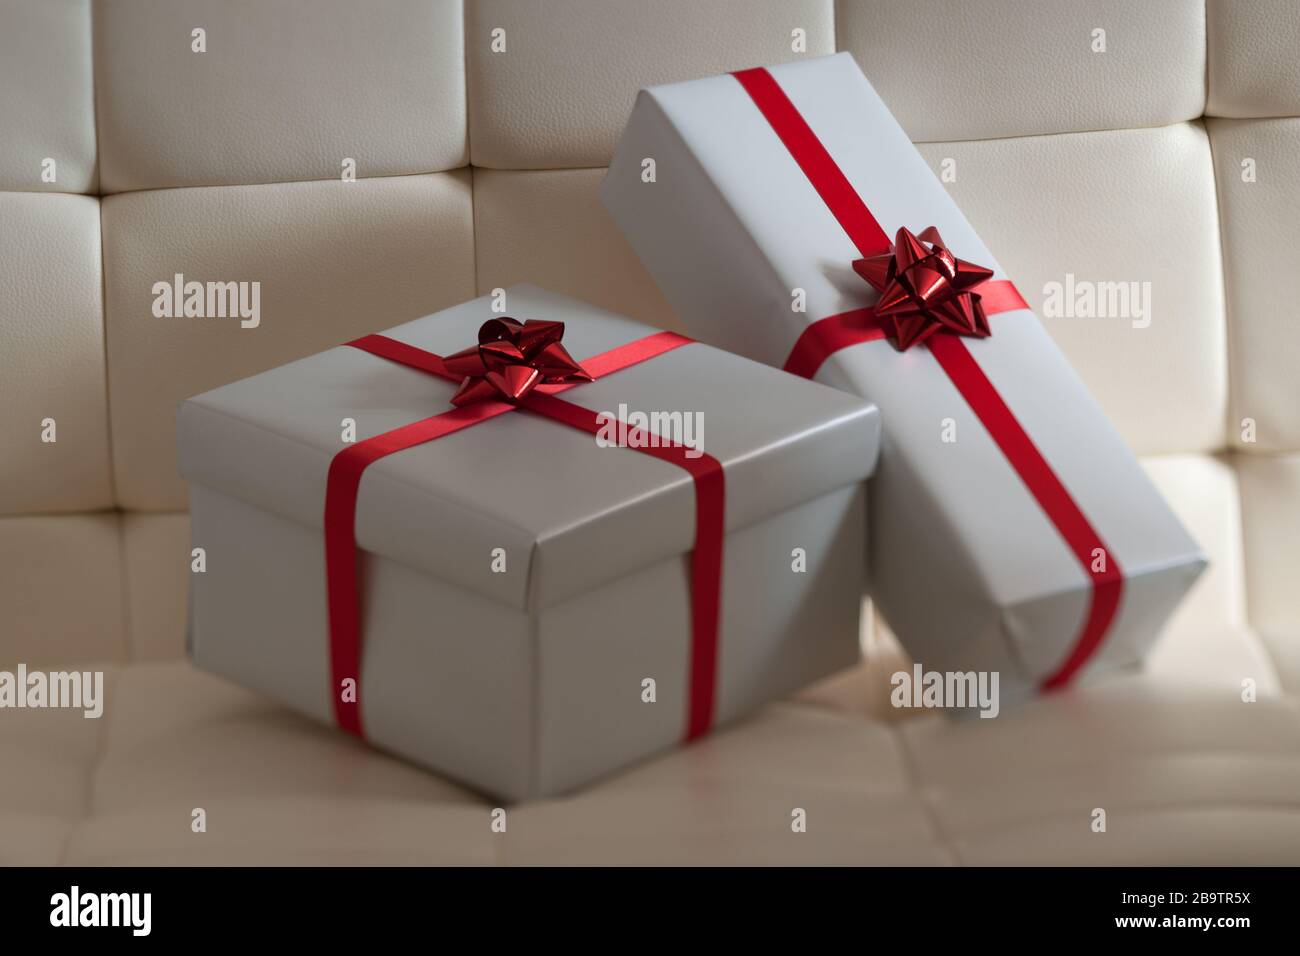 Dos regalos envueltos en regalo en silla acolchada blanca Foto de stock